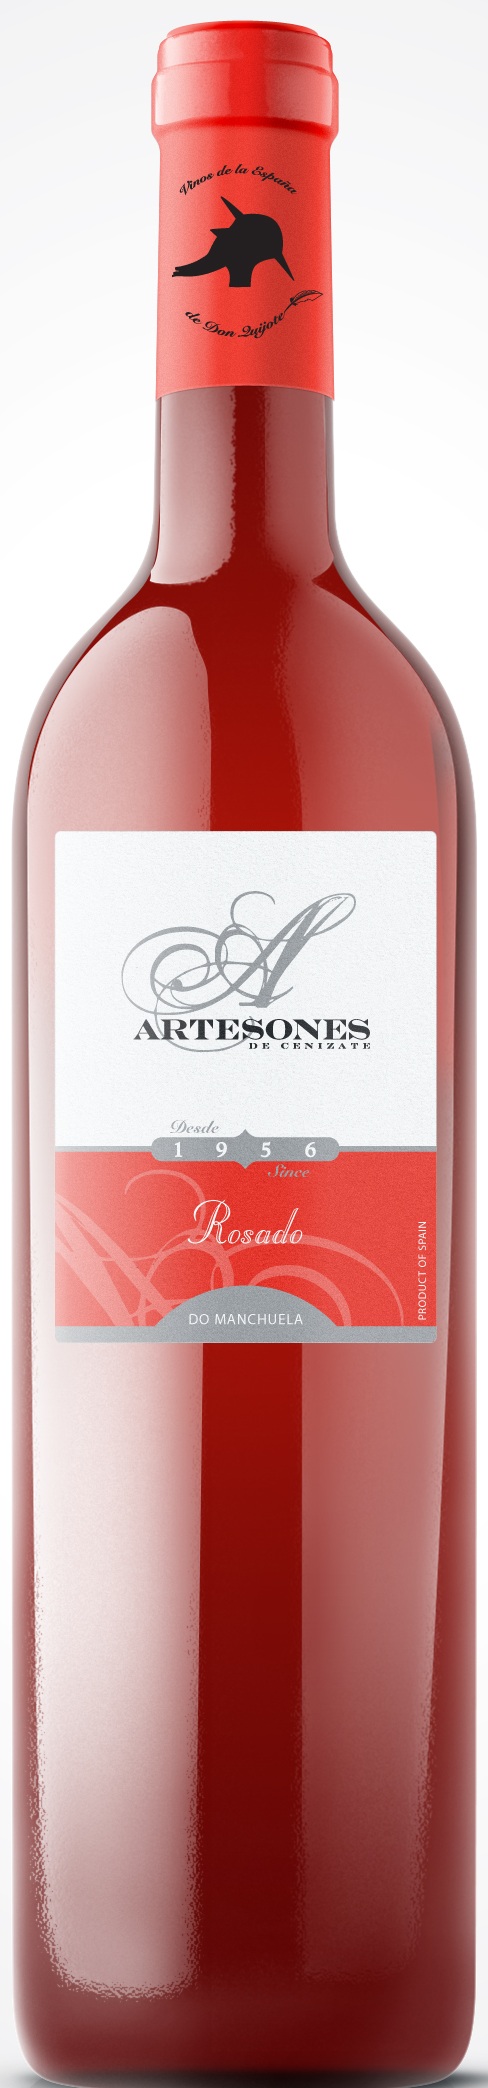 Bild von der Weinflasche Artesones Rosado